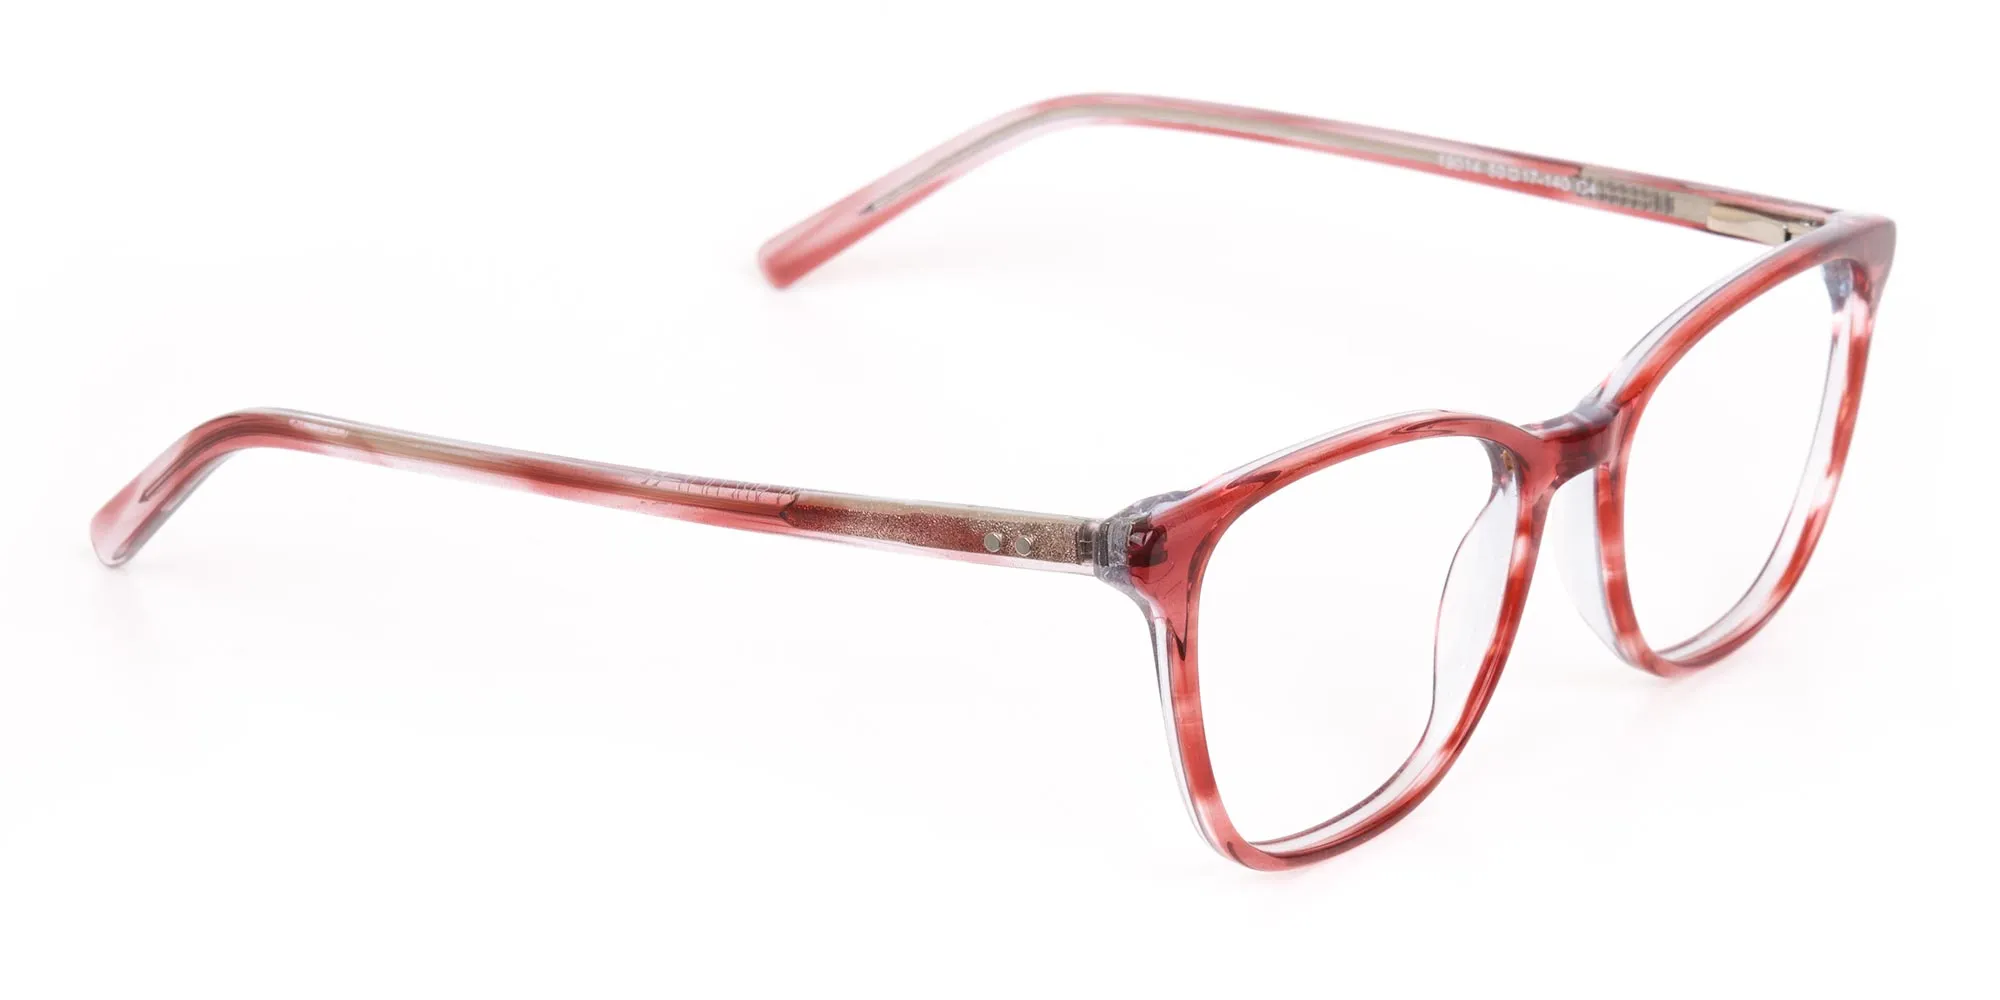 Translucent Rose Red square Acetate Glasses-2